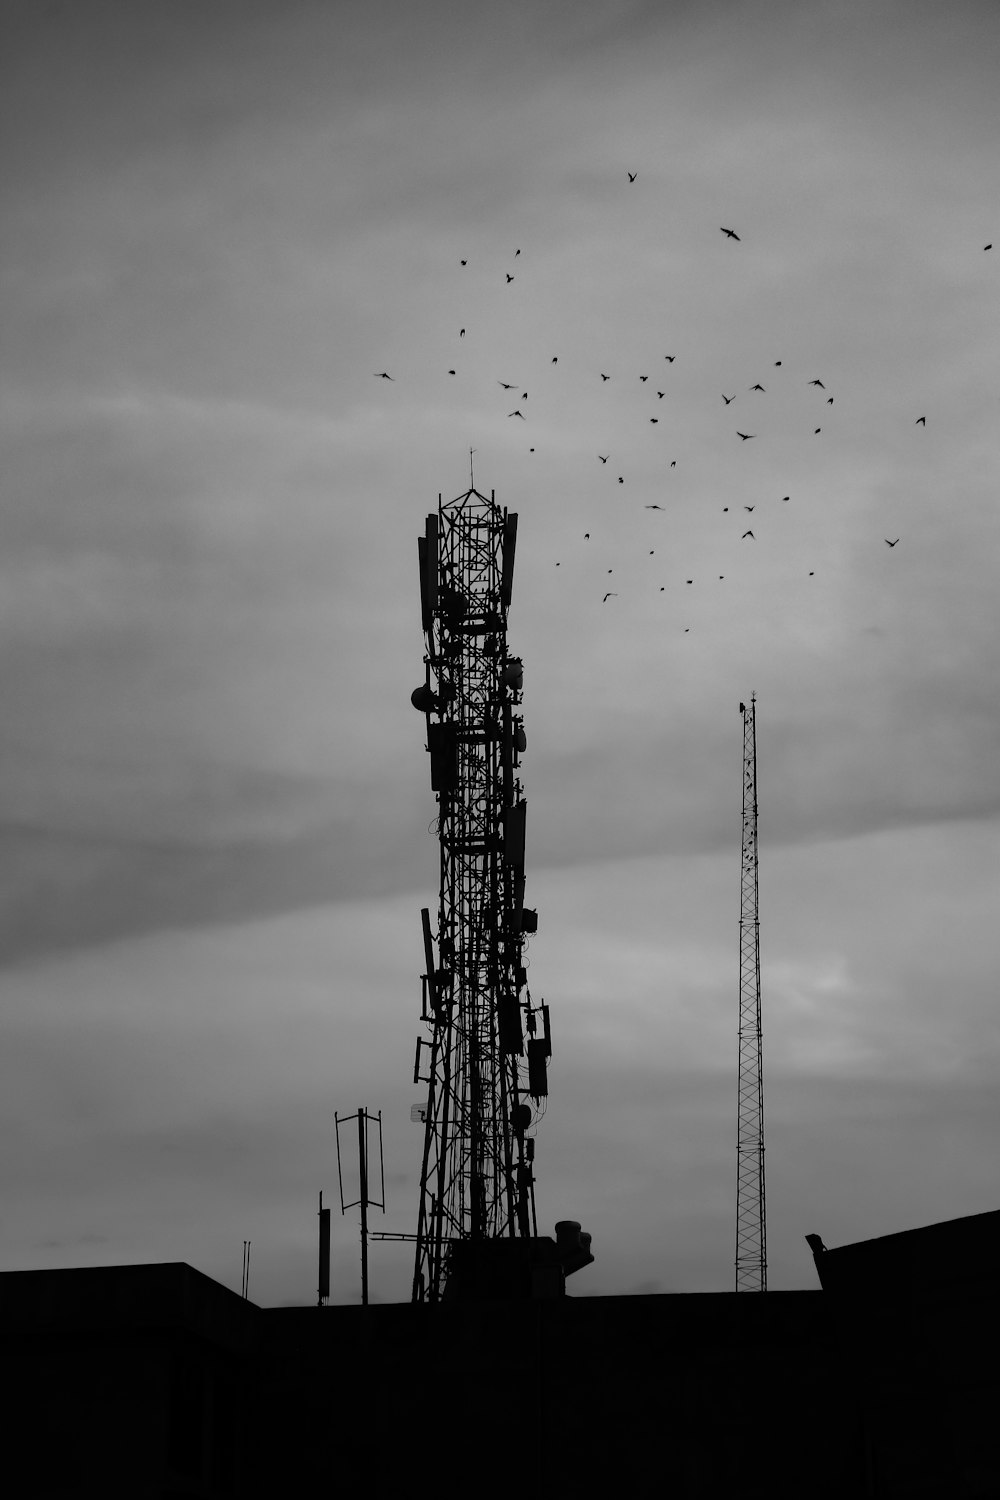 Fotografía en escala de grises de bandada de pájaros volando sobre la torre de la grúa